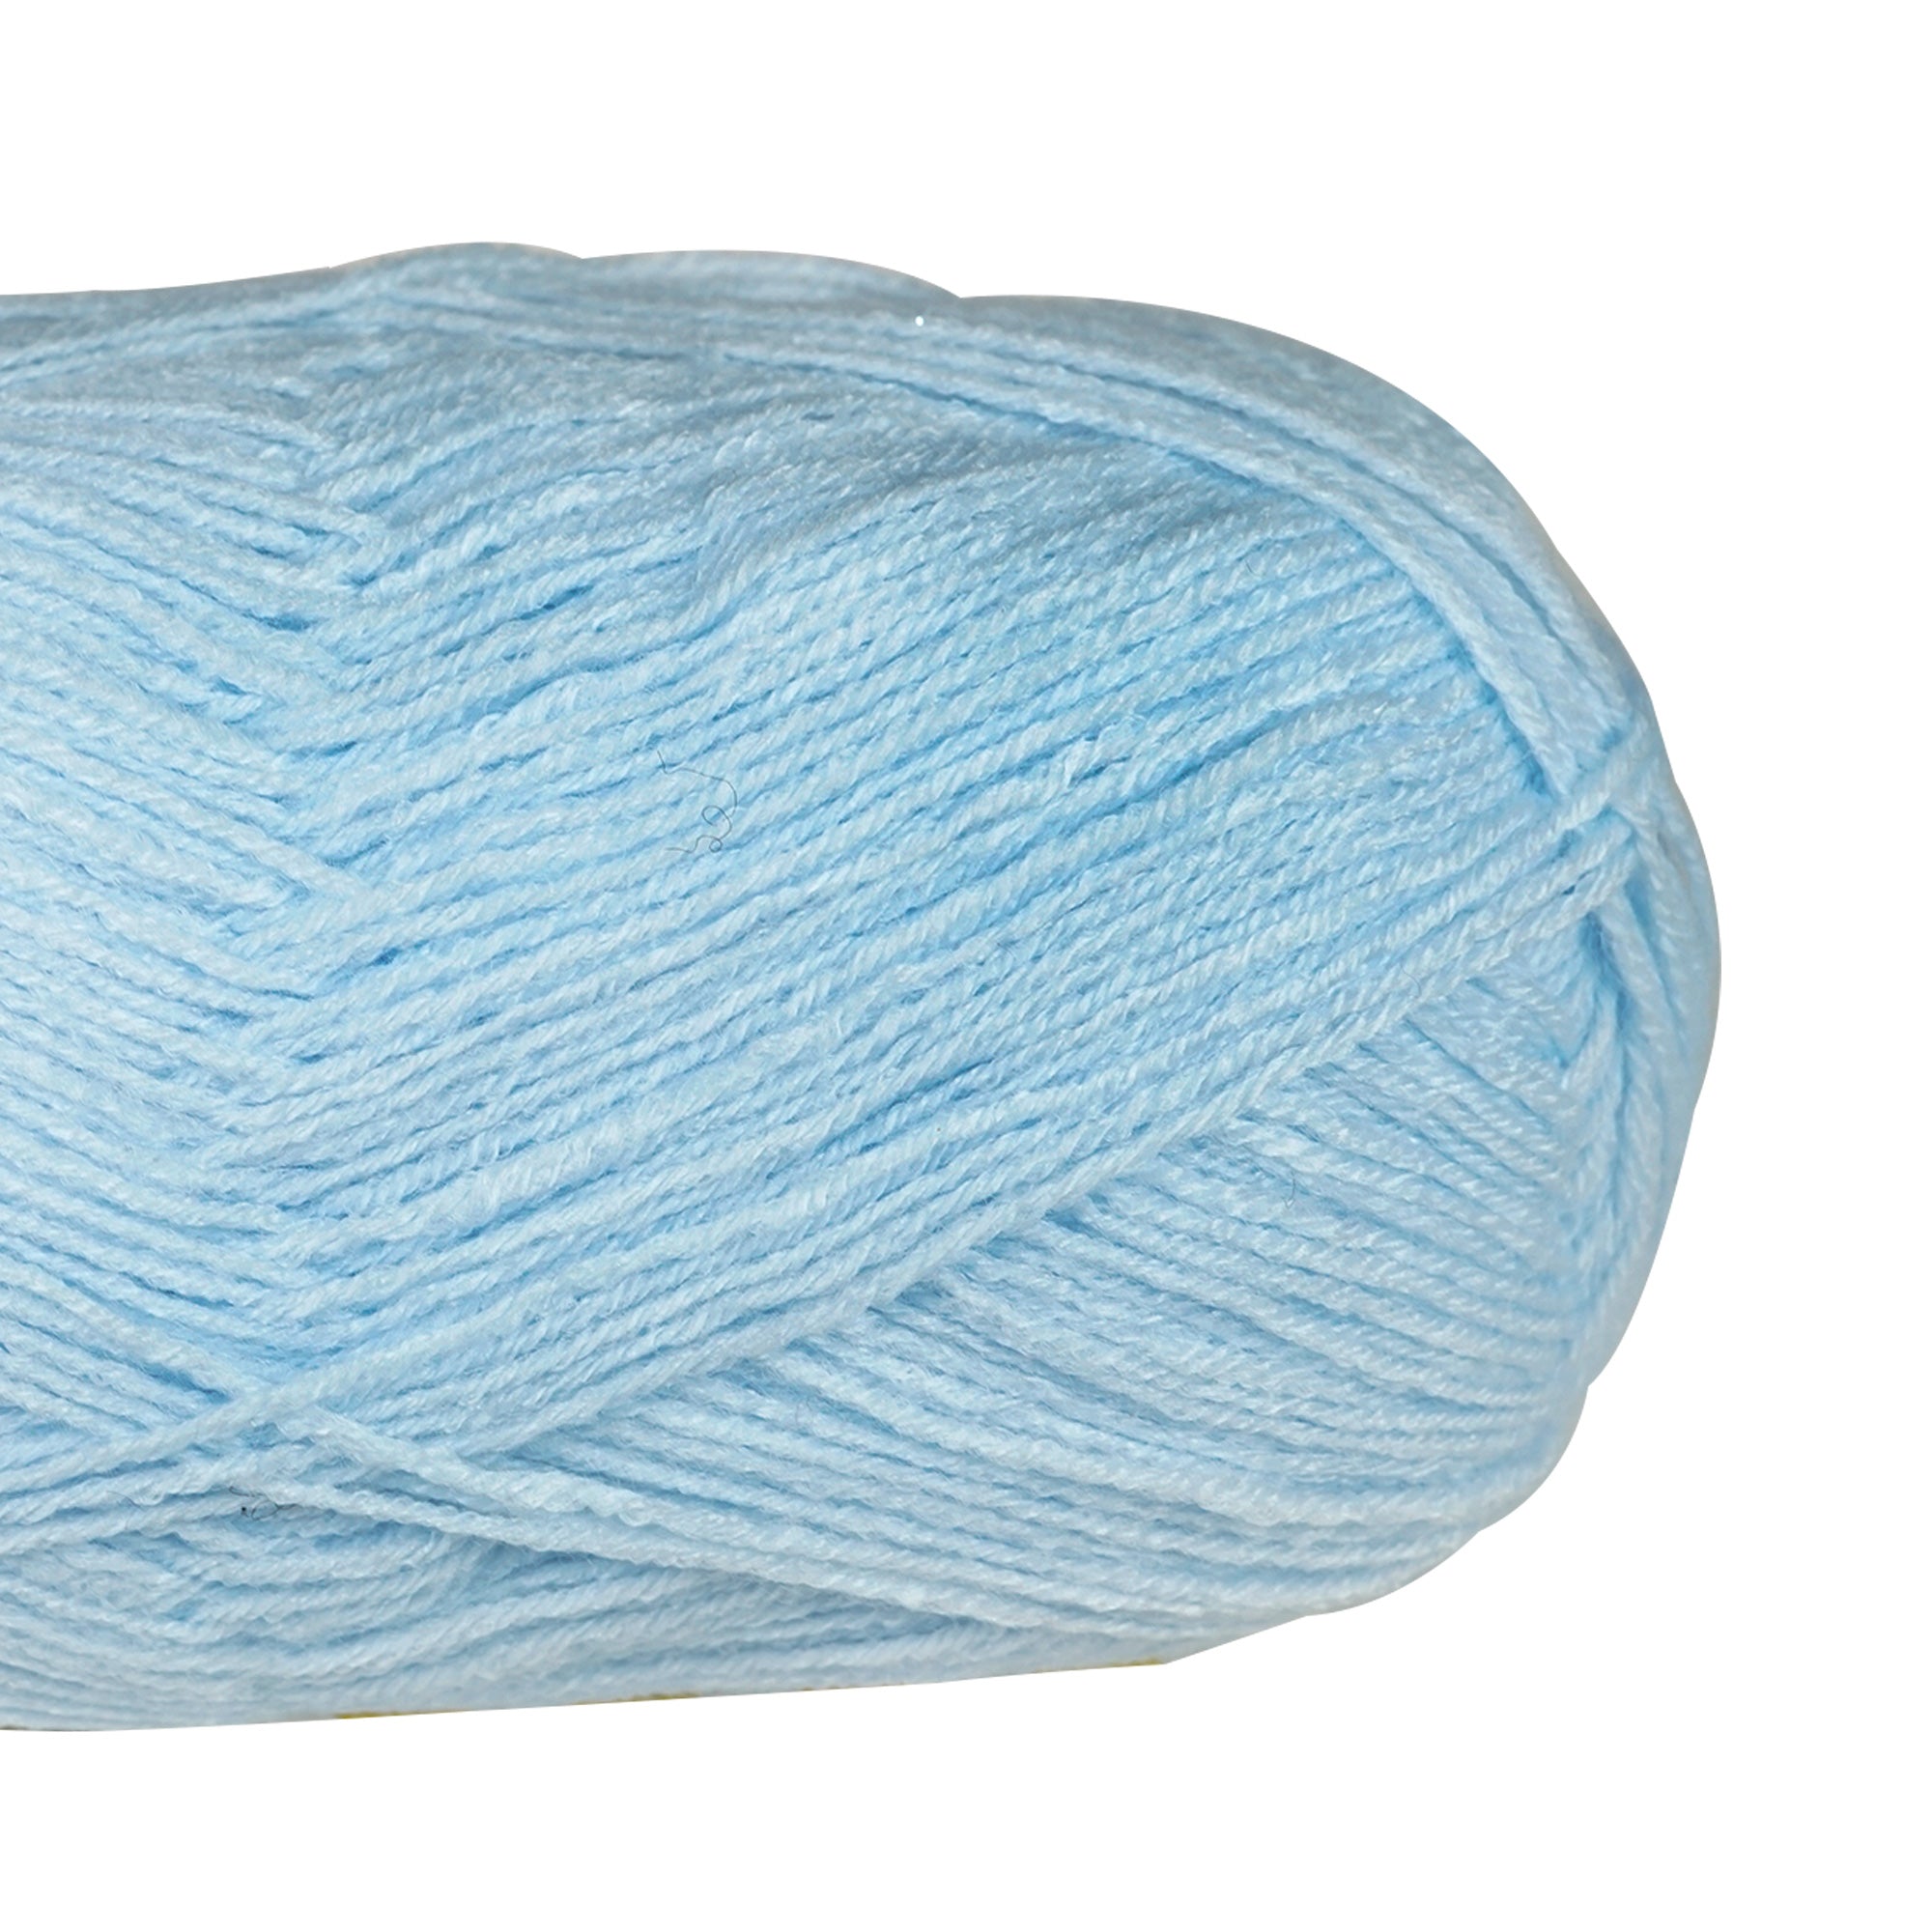 Porta Craft Super Soft Baby Acrylic Yarn 100% 100Gm 420M 4Ply Baby Blue